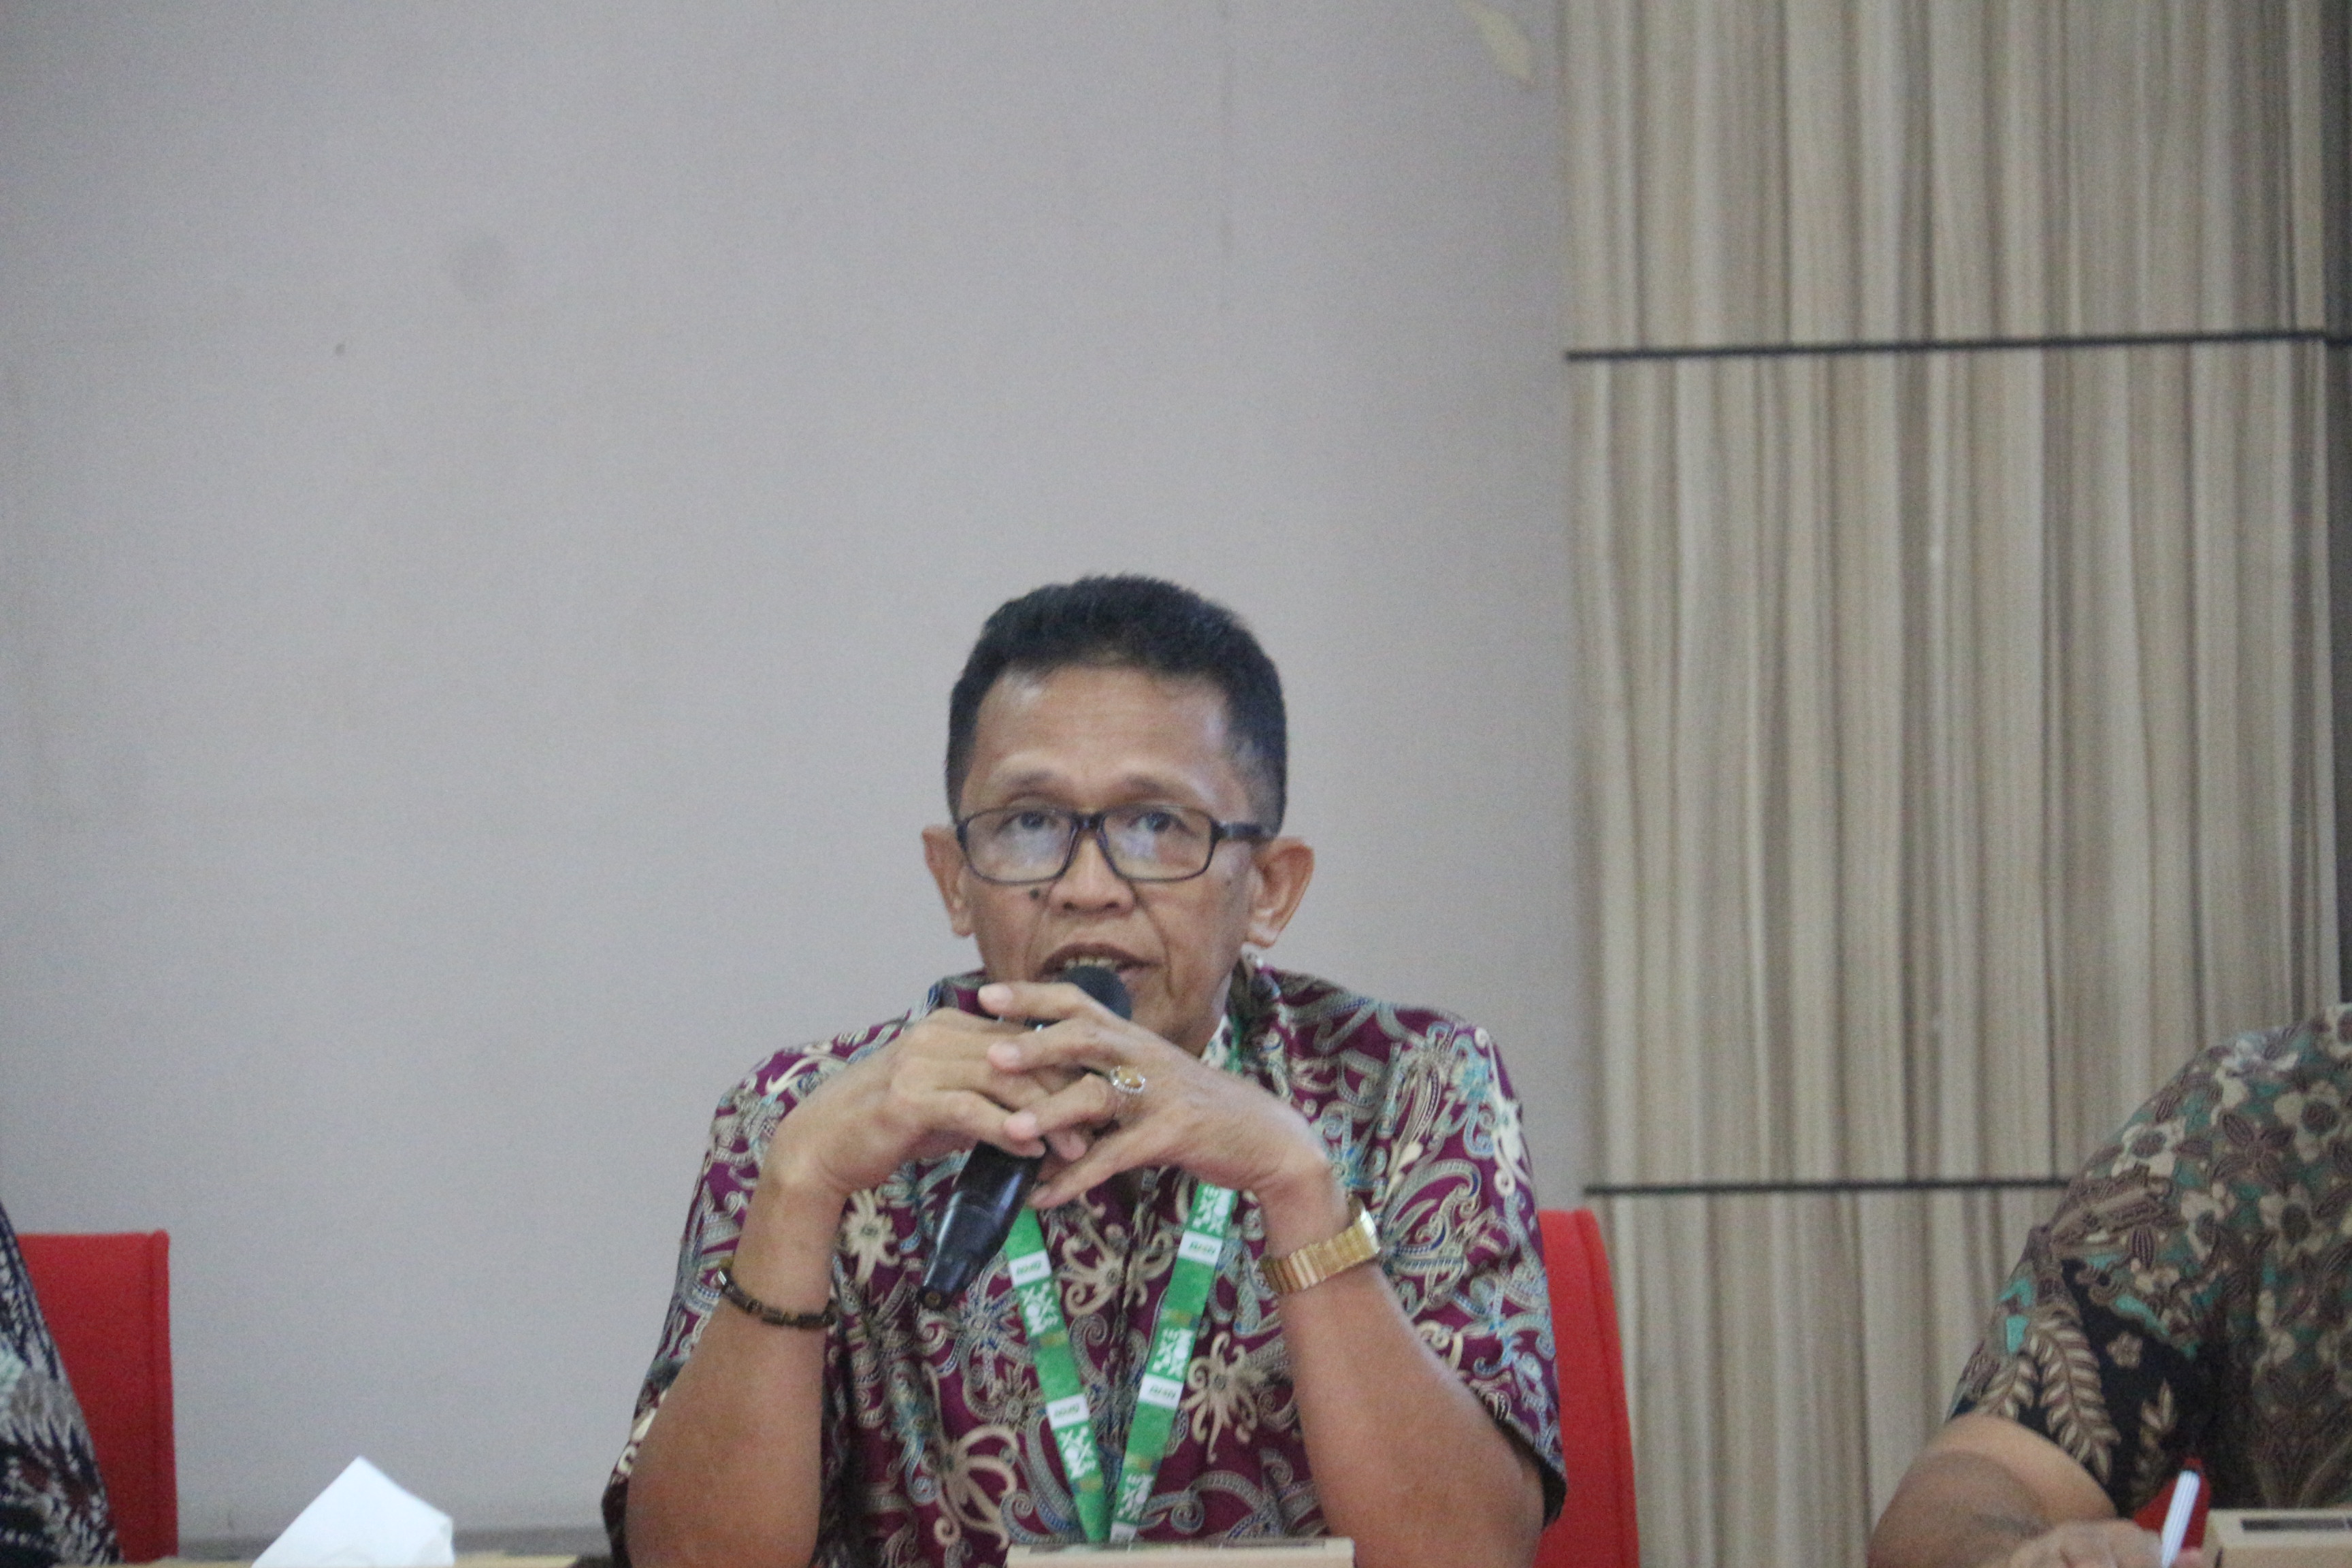 Konpers APBN Sulawesi Selatan: Kontribusi PNBP dari Pengelolaan Kekayaan Negara  dan Lelang Mencapai Rp46,84 Milyar